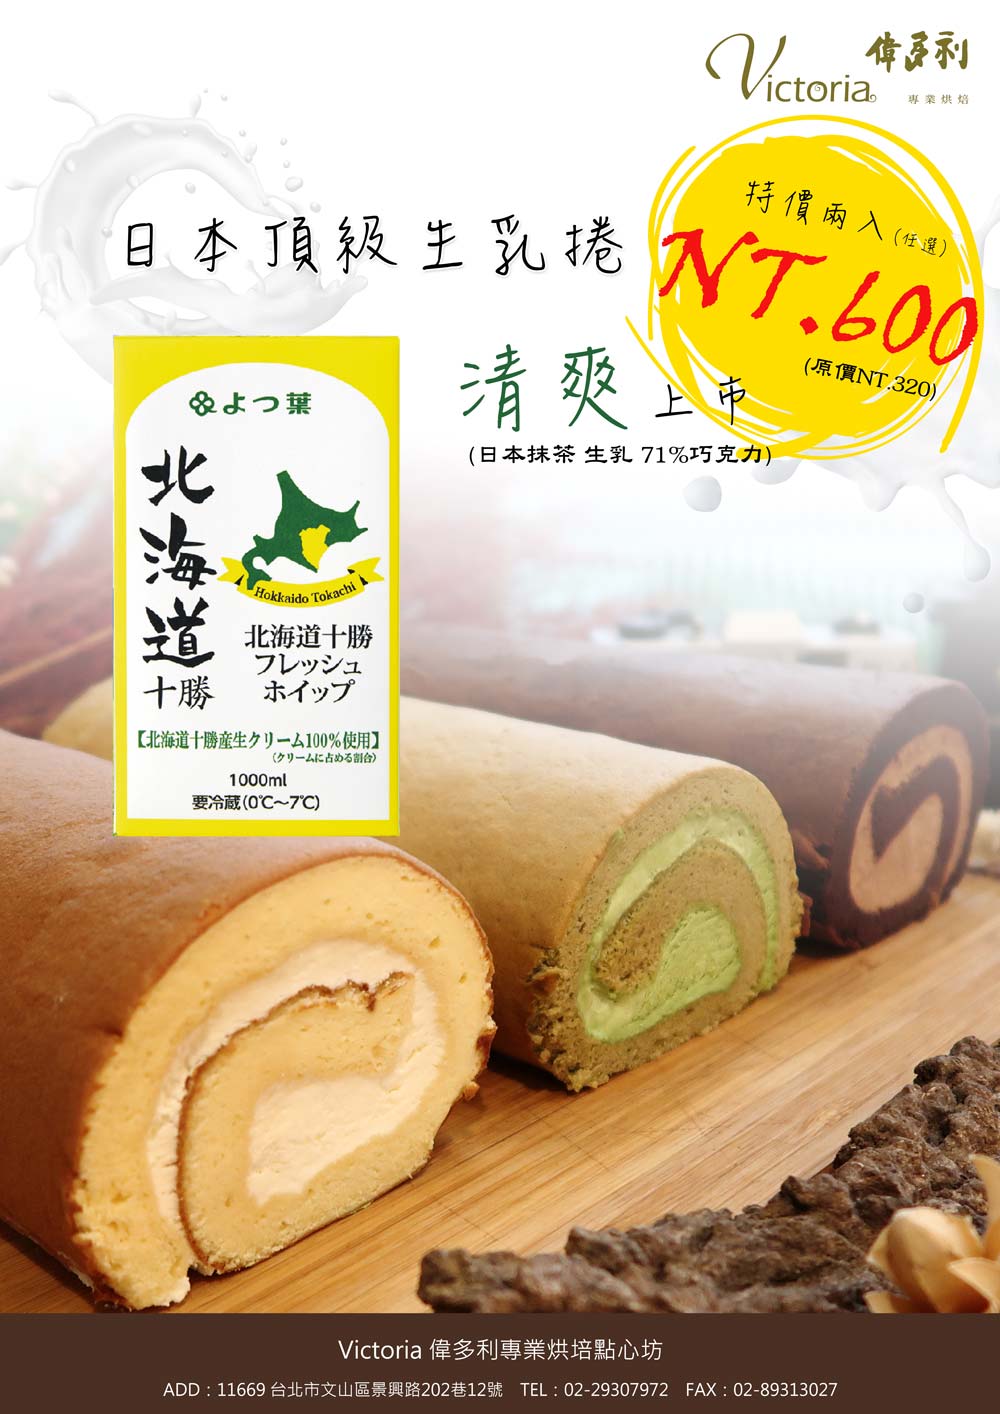 下午茶與團購首選的日本頂級生乳捲上市